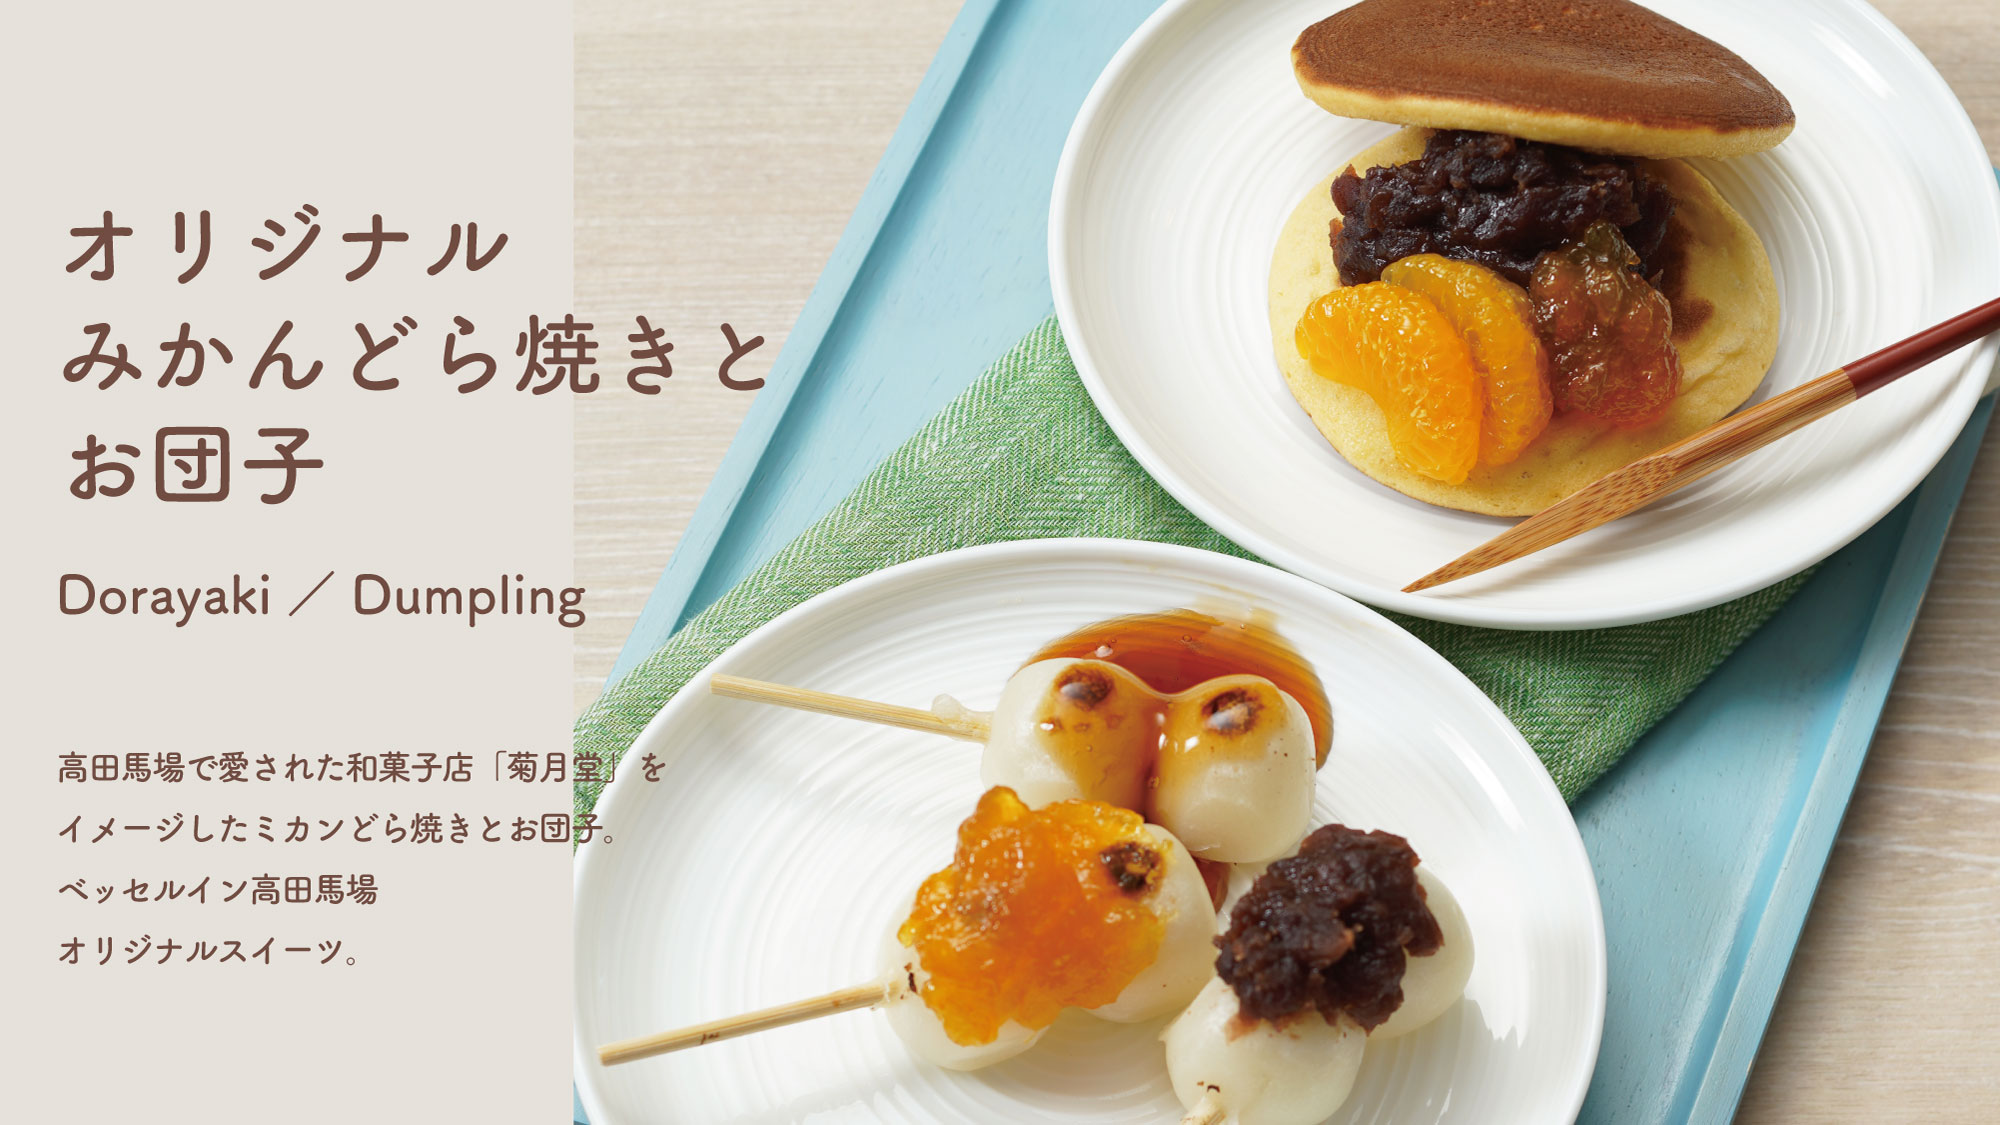 和菓子店『菊月堂』をイメージしたミカンどら焼きとお団子。